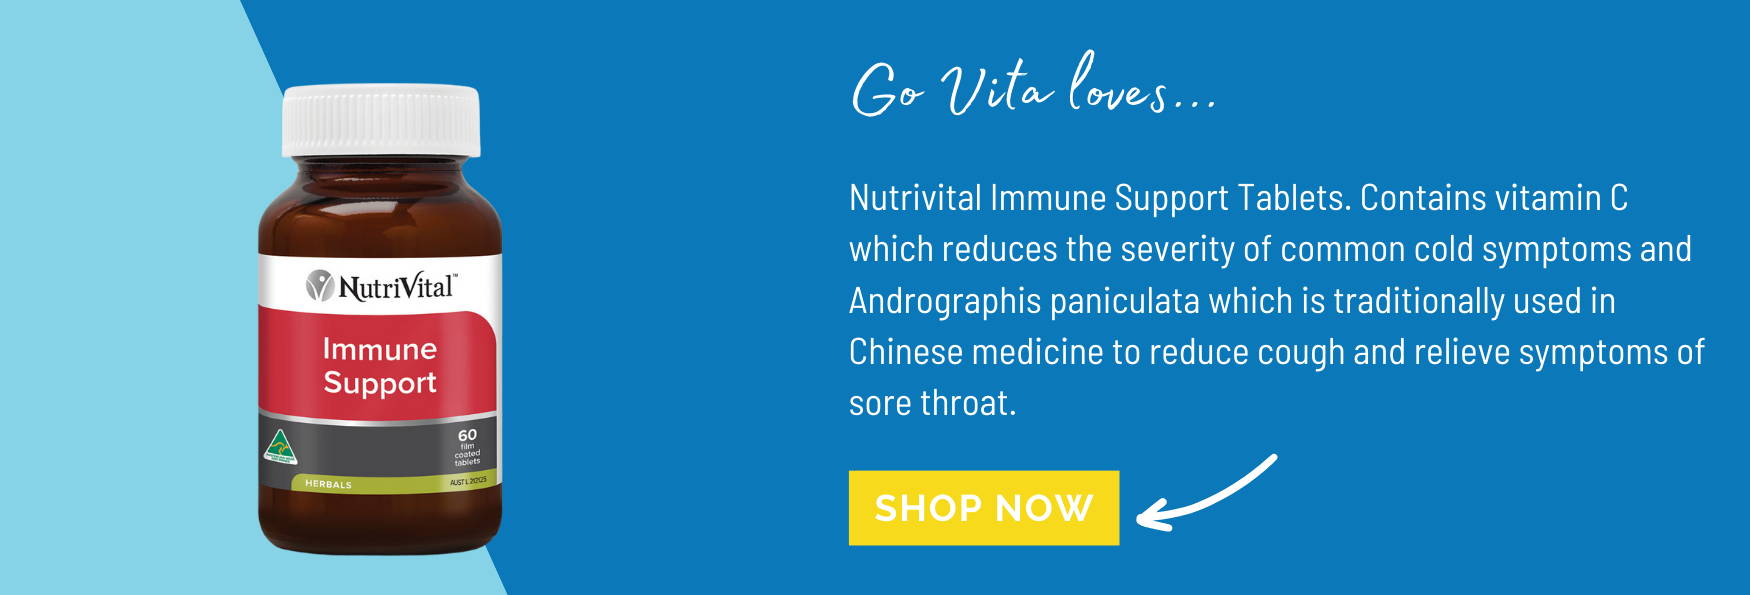  NutriVital Immune Support